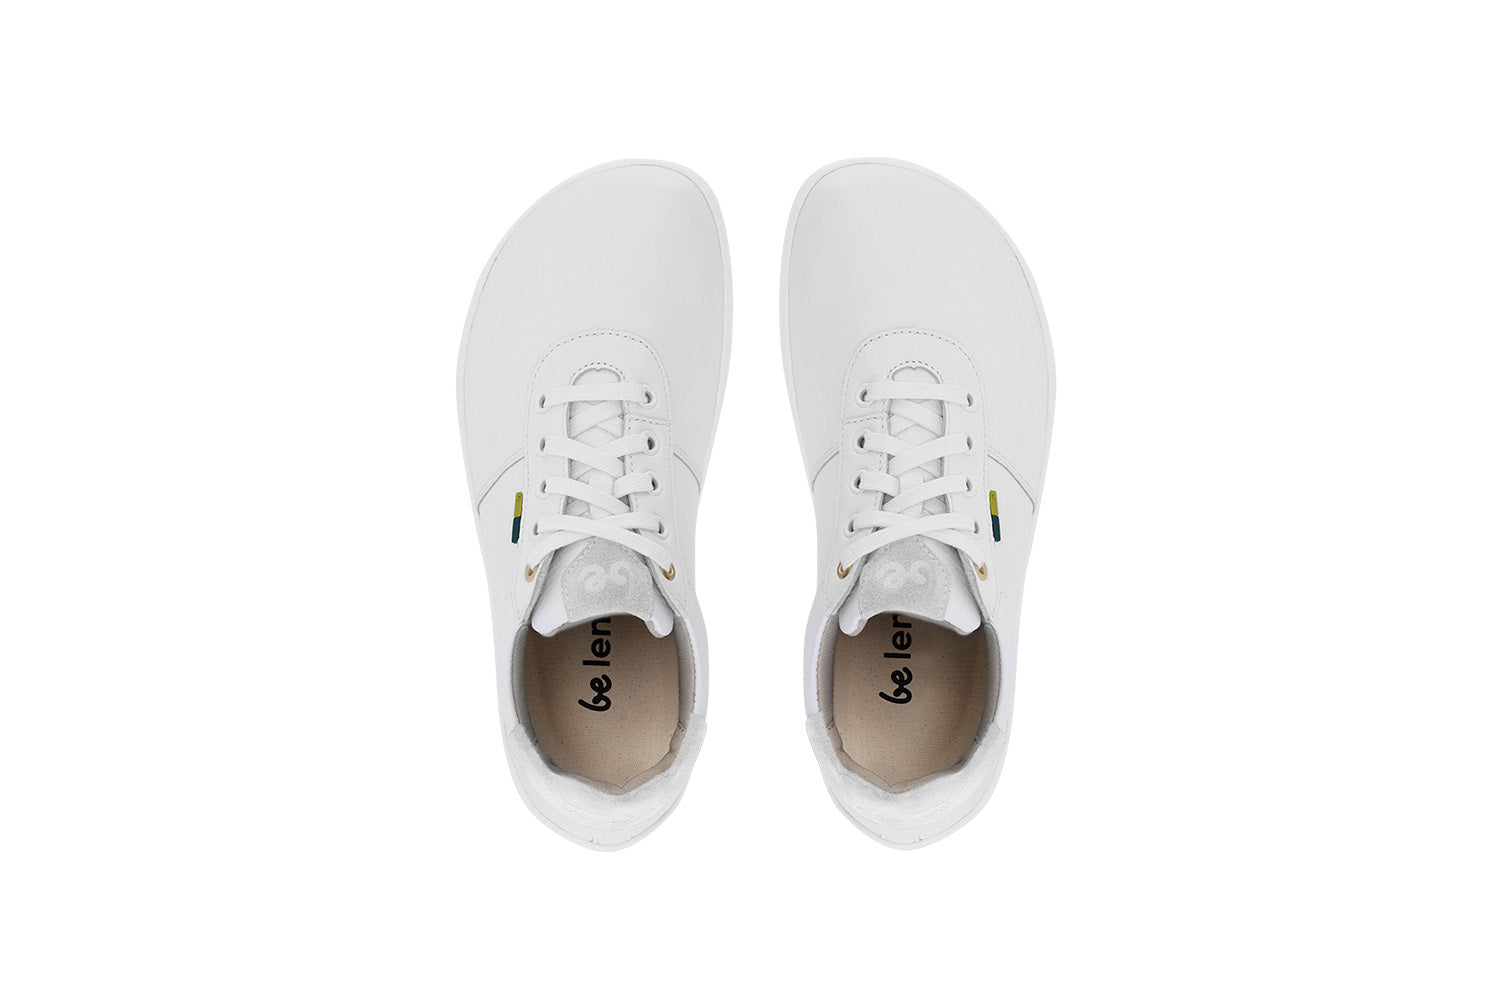 Barefoot Shoes - Be Lenka - Royale - White & Beige 5 OzBarefoot Australia